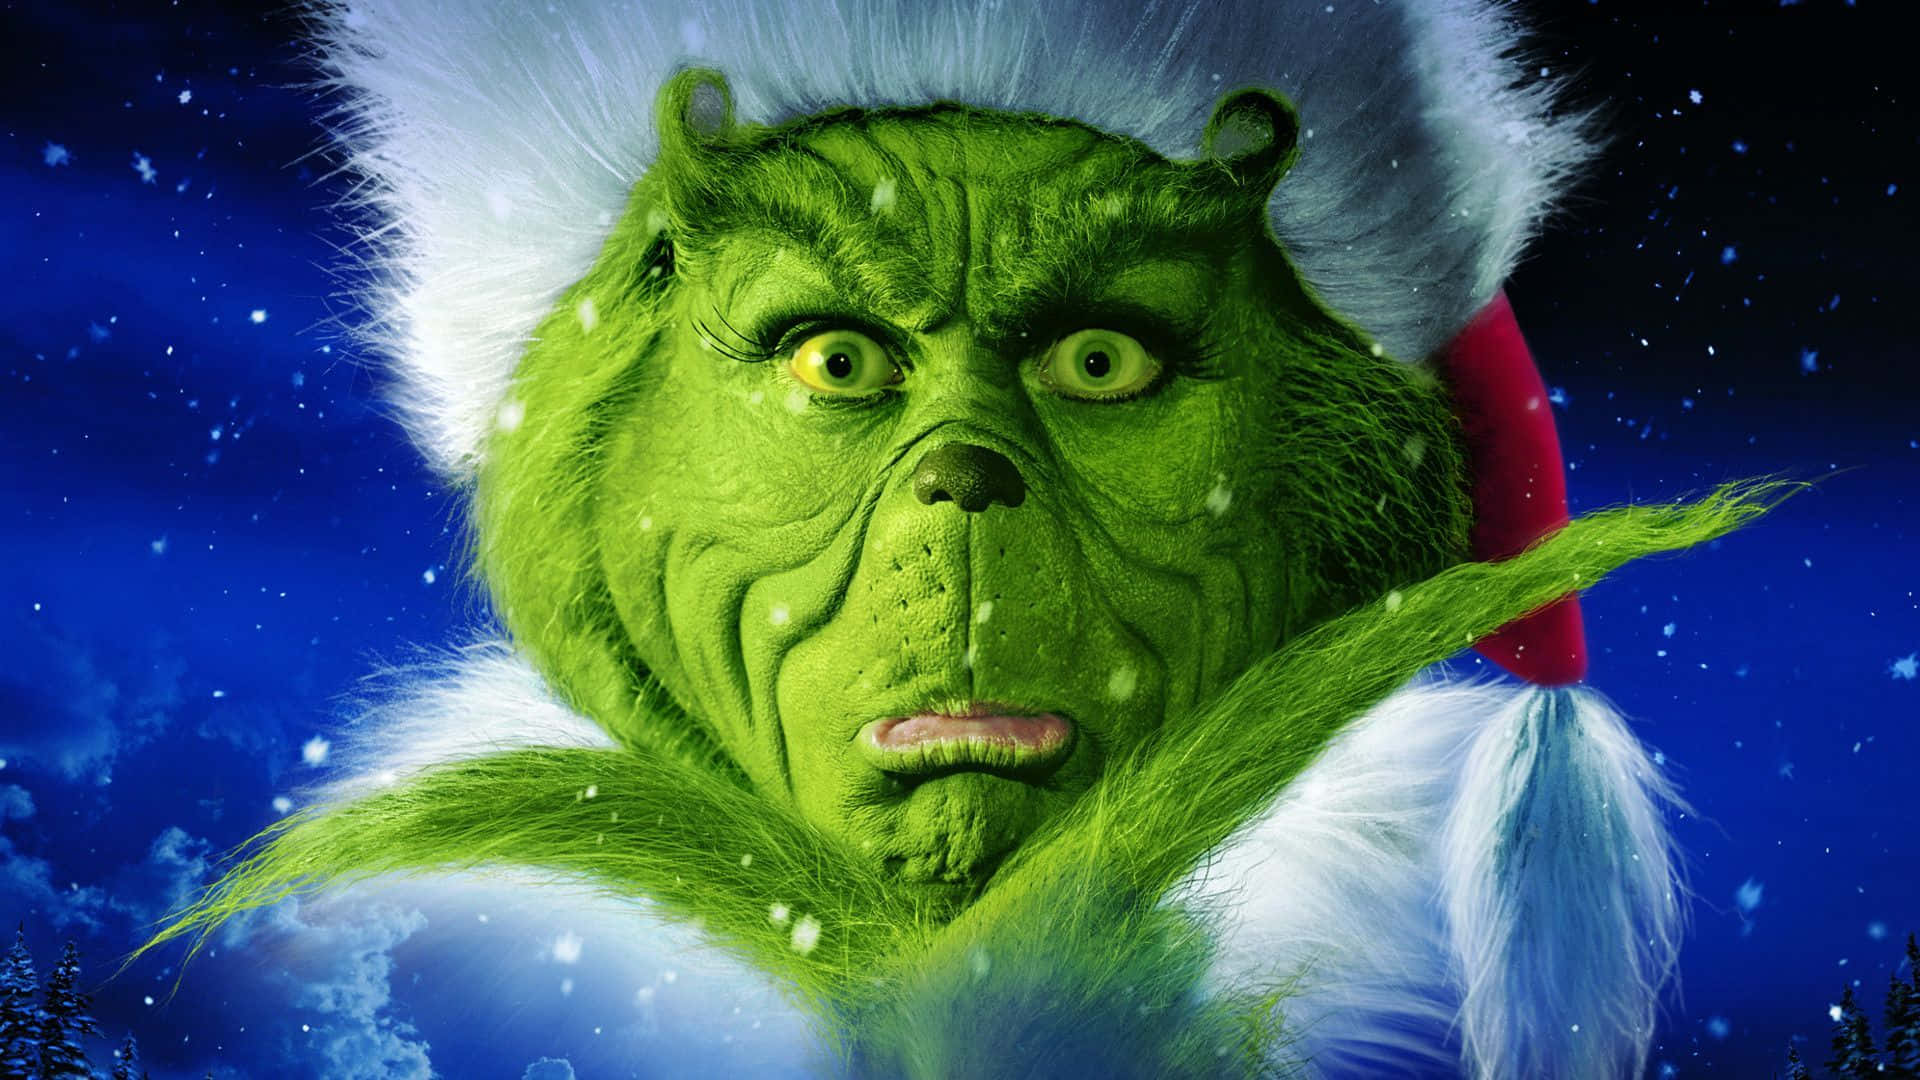 Imagendel Grinch Sorprendido En Navidad